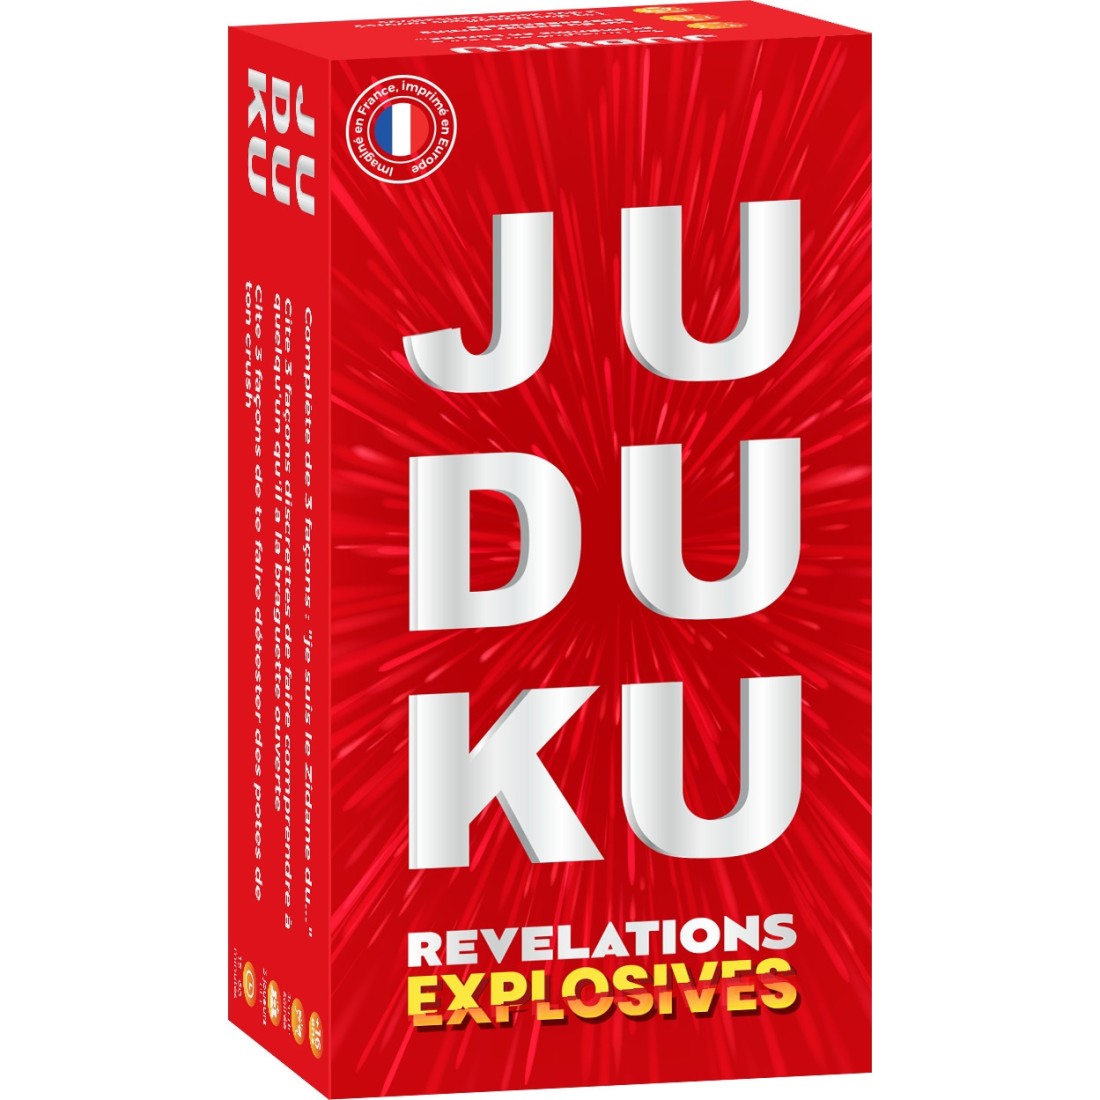 Juduku - Le Vice Ultime au meilleur prix sur